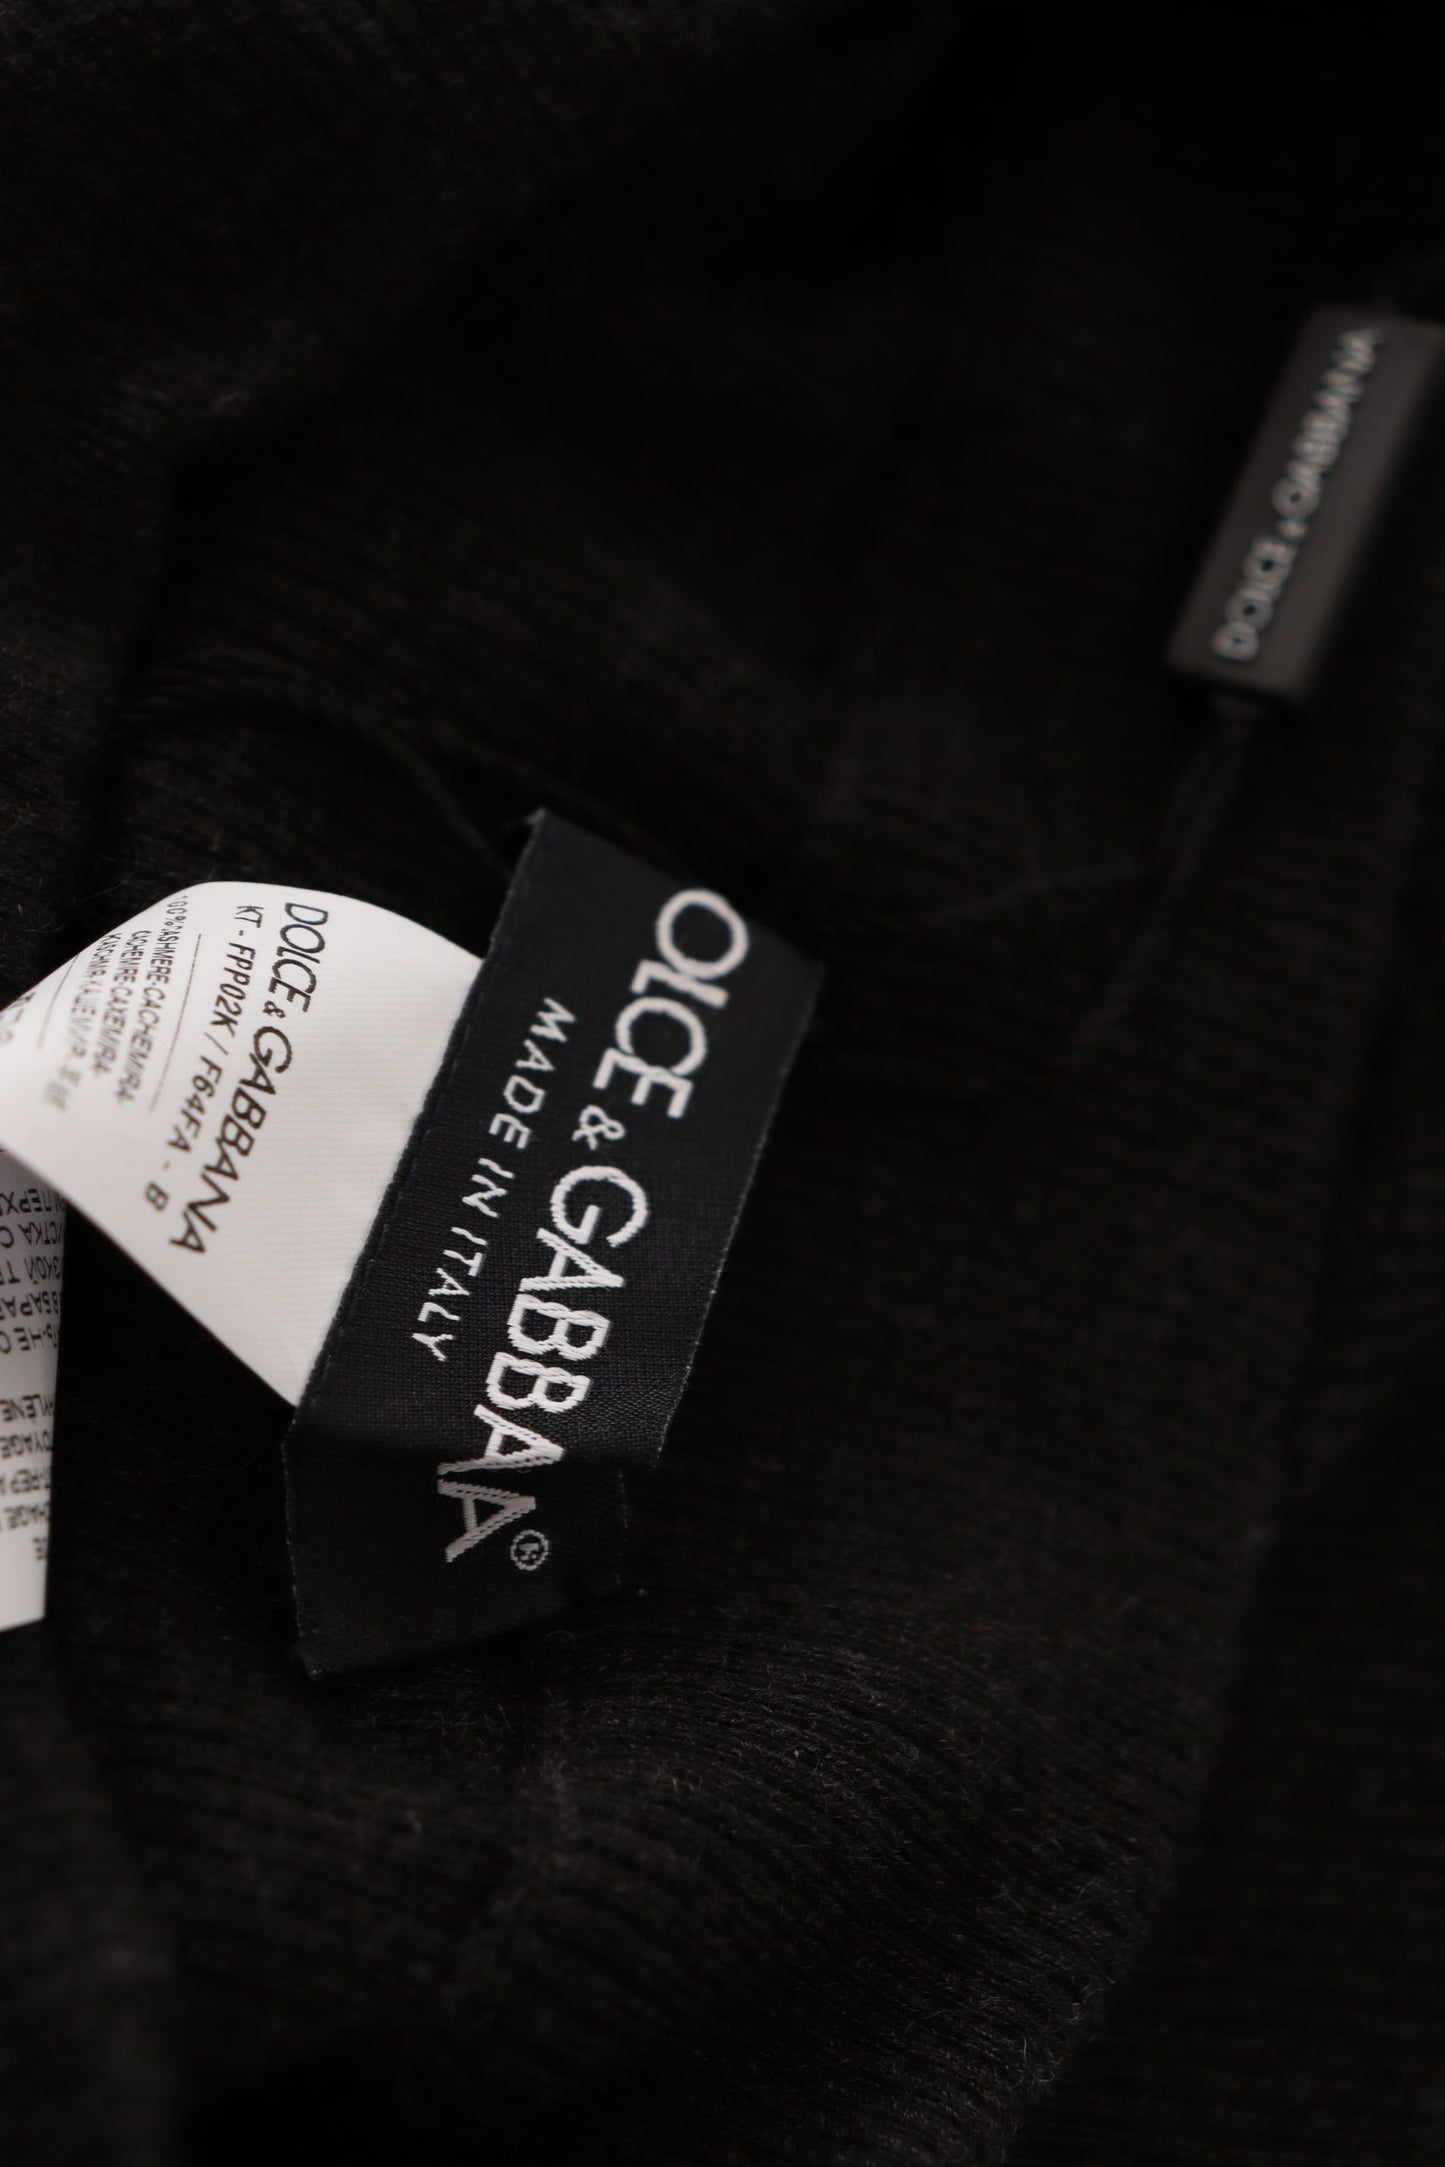 Dolce & Gabbana Grey Cashmere Strumpfhosen Strumpfhosen Socken ausgestattet